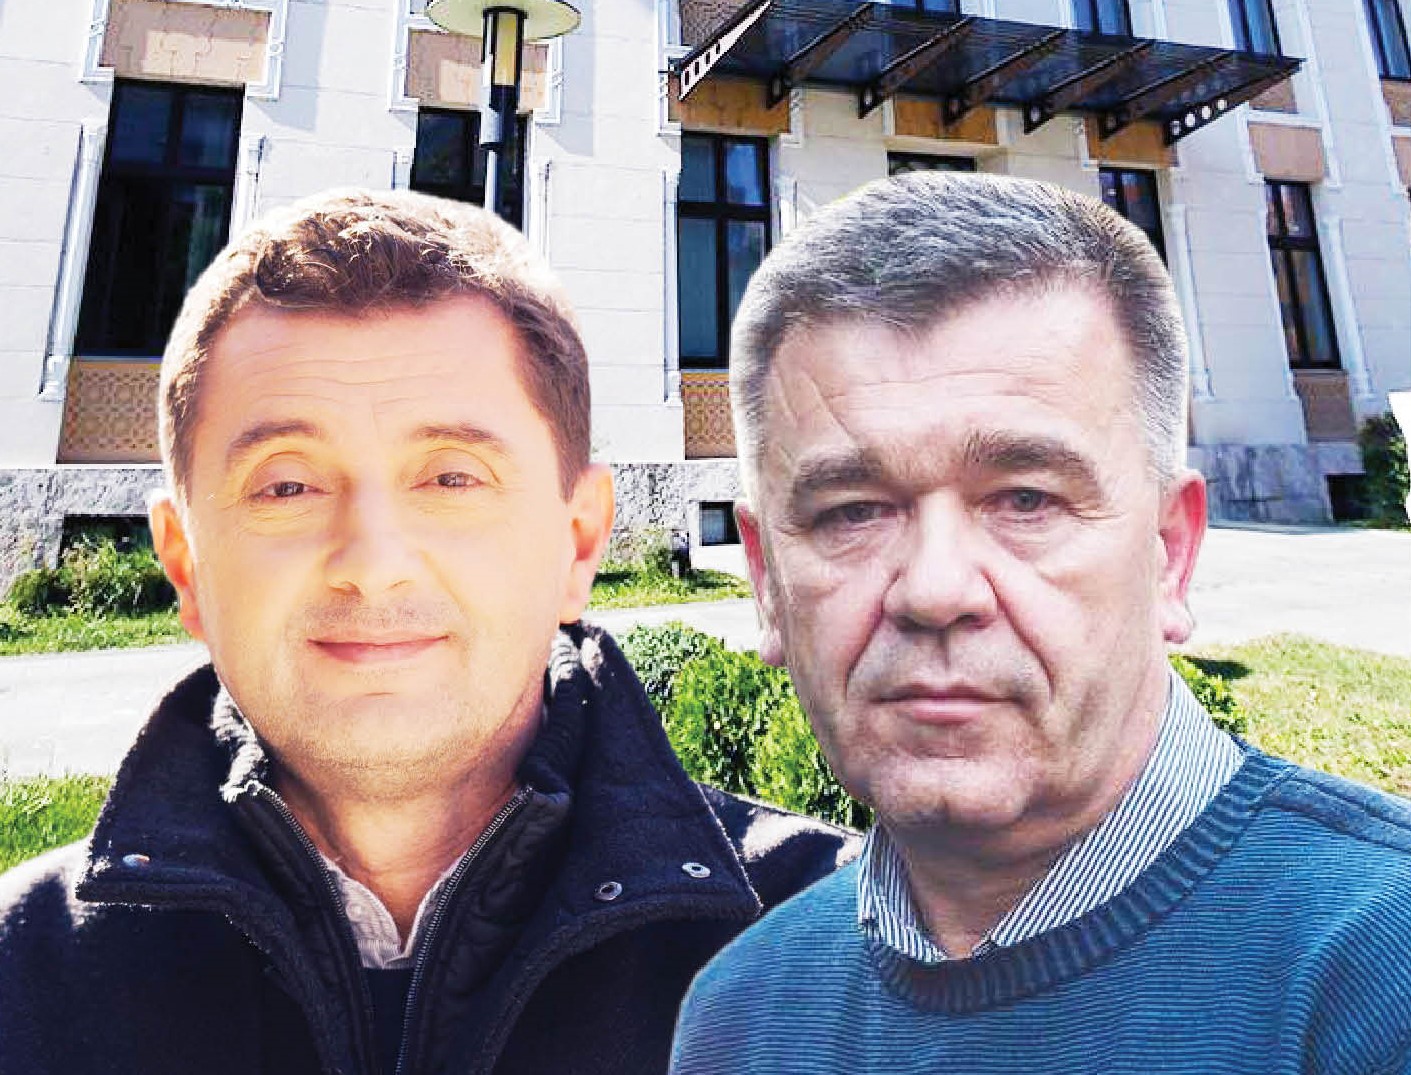 Hoće li Kordić i Marić danas preuzeti upravljanje Mostarom?